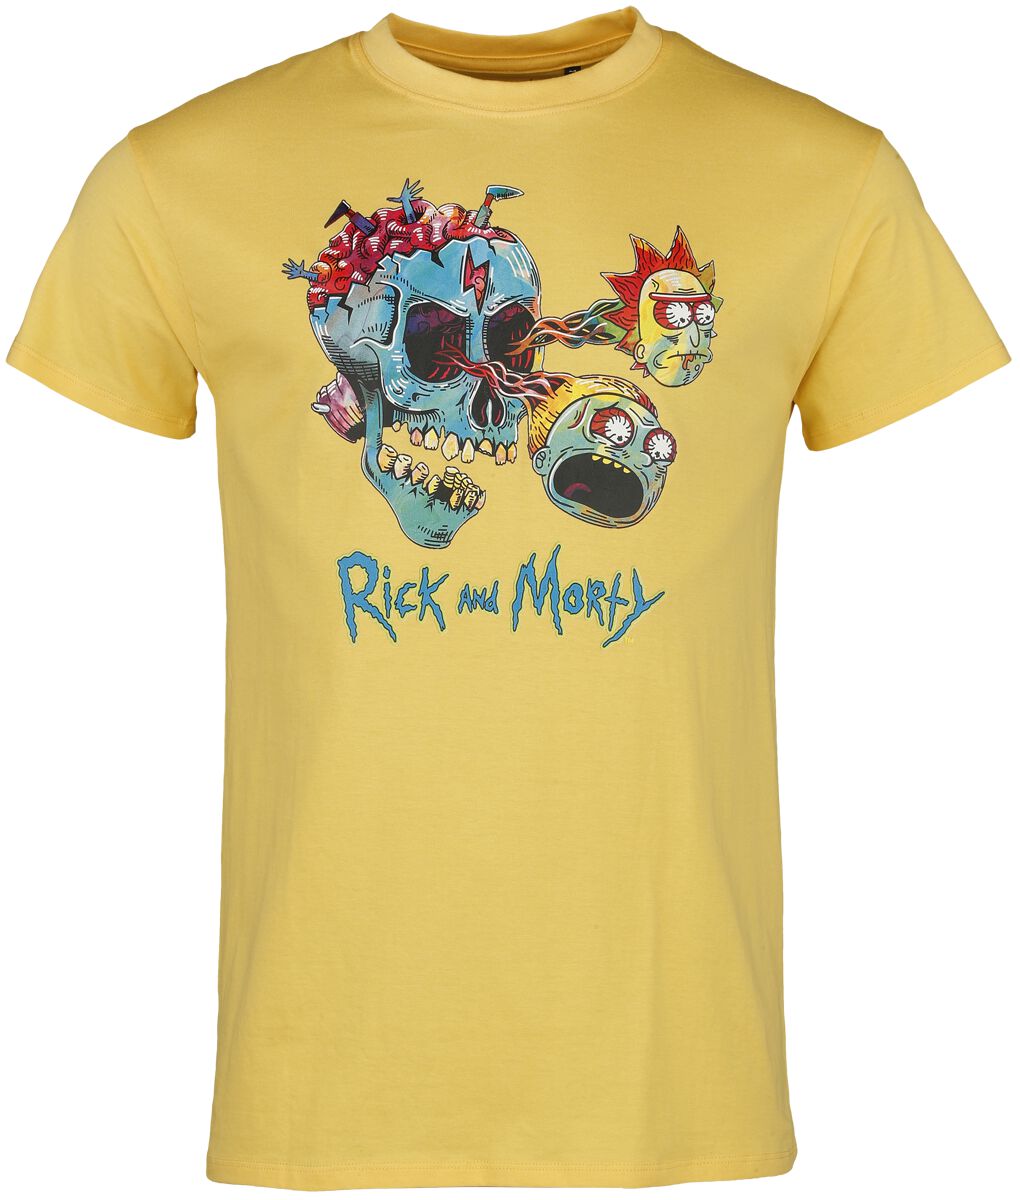 Rick And Morty T-Shirt - Summer Vibes - S bis XXL - für Männer - Größe L - gelb  - Lizenzierter Fanartikel von Rick And Morty